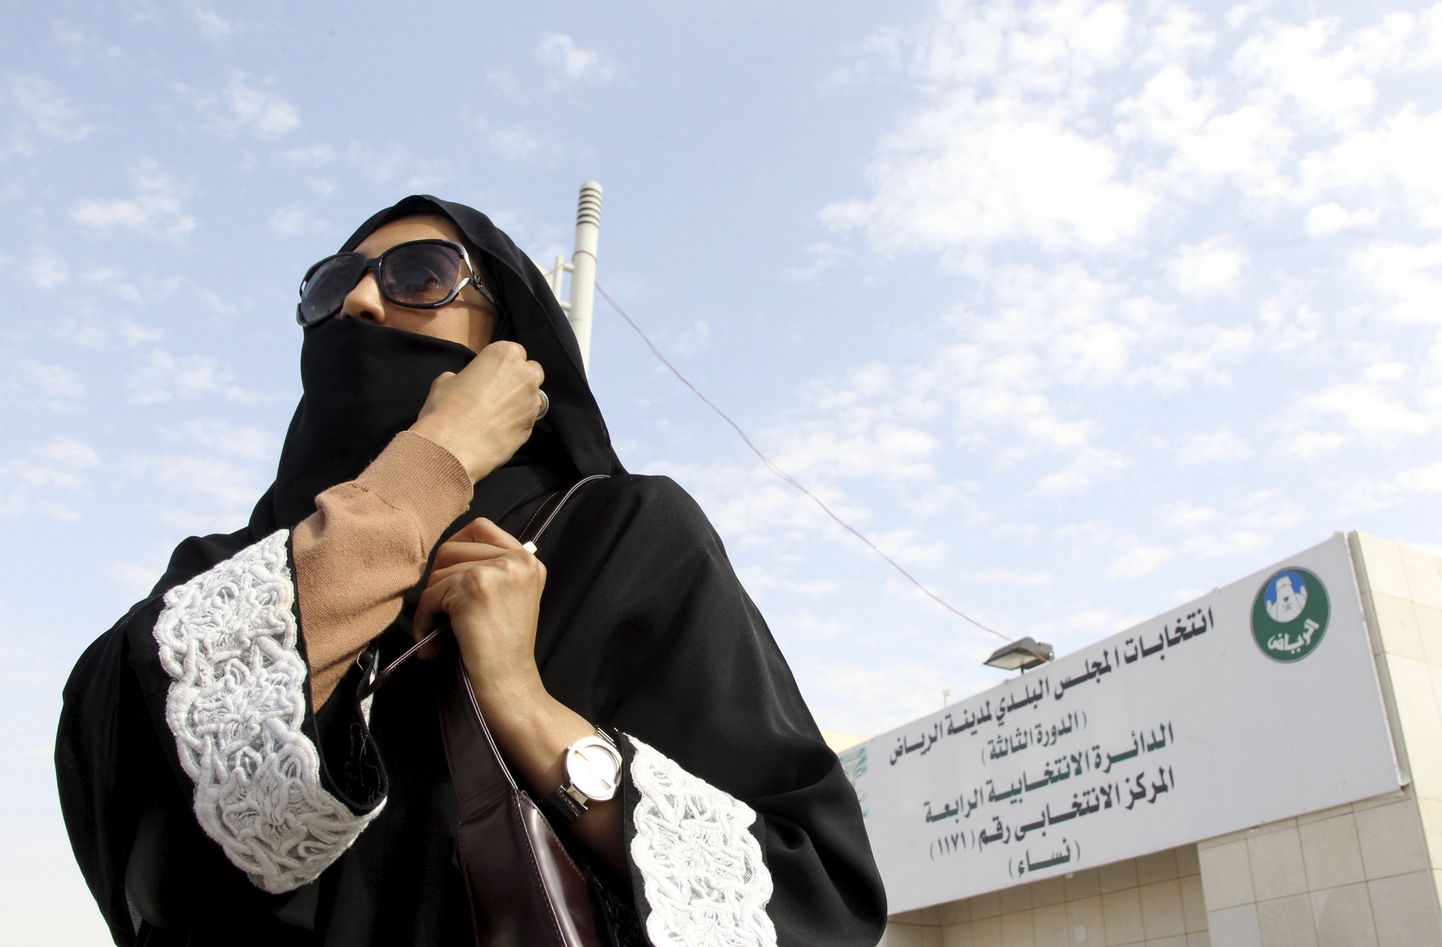 В Саудовской Аравии в субботу проходят муниципальные выборы, в которых впервые в истории страны могут участвовать женщины.